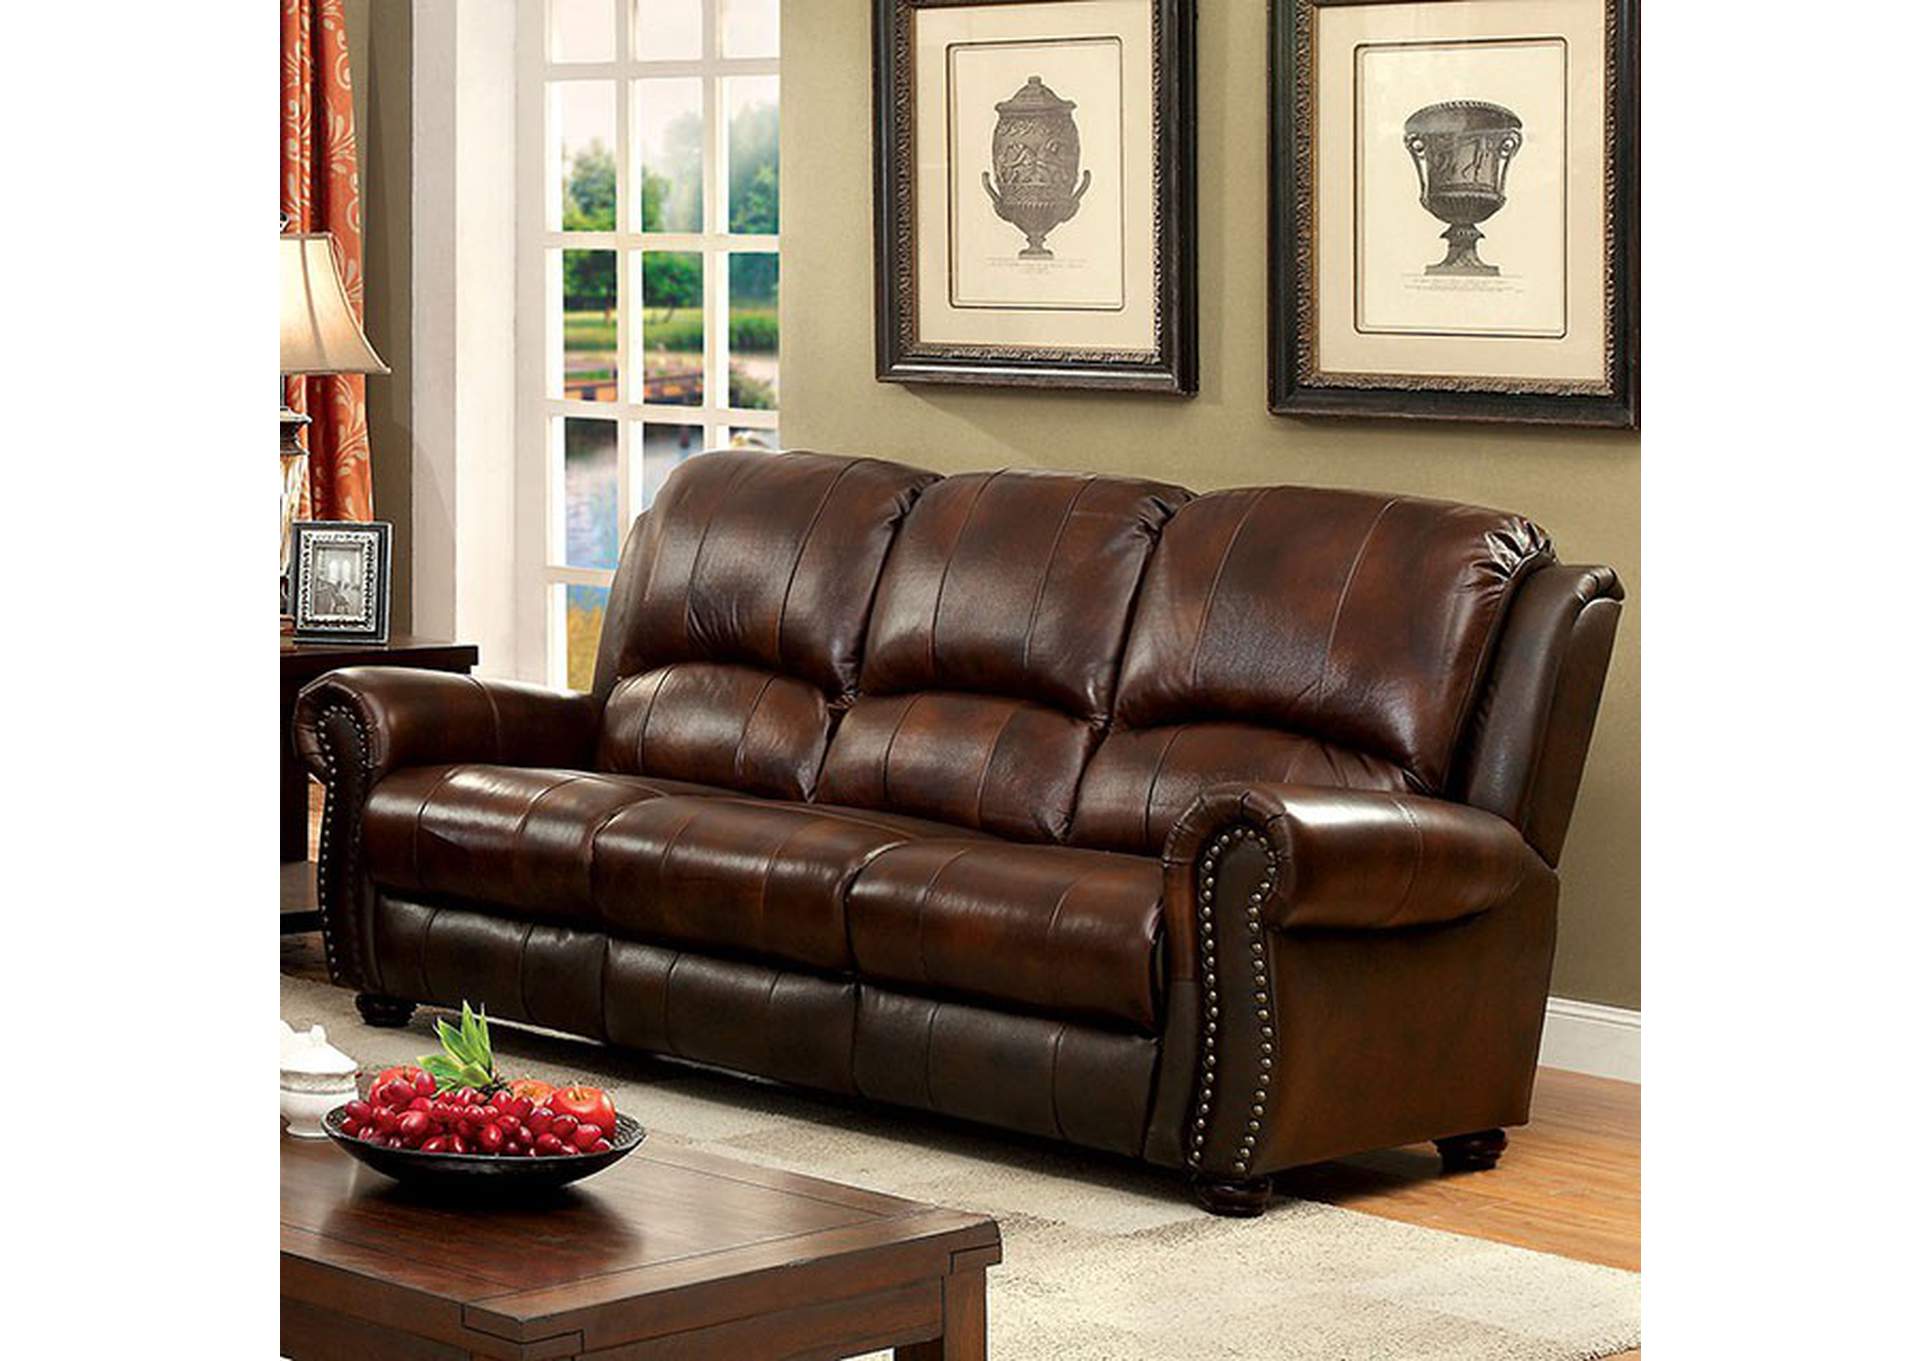 Turton Brown Sofa,Furniture of America